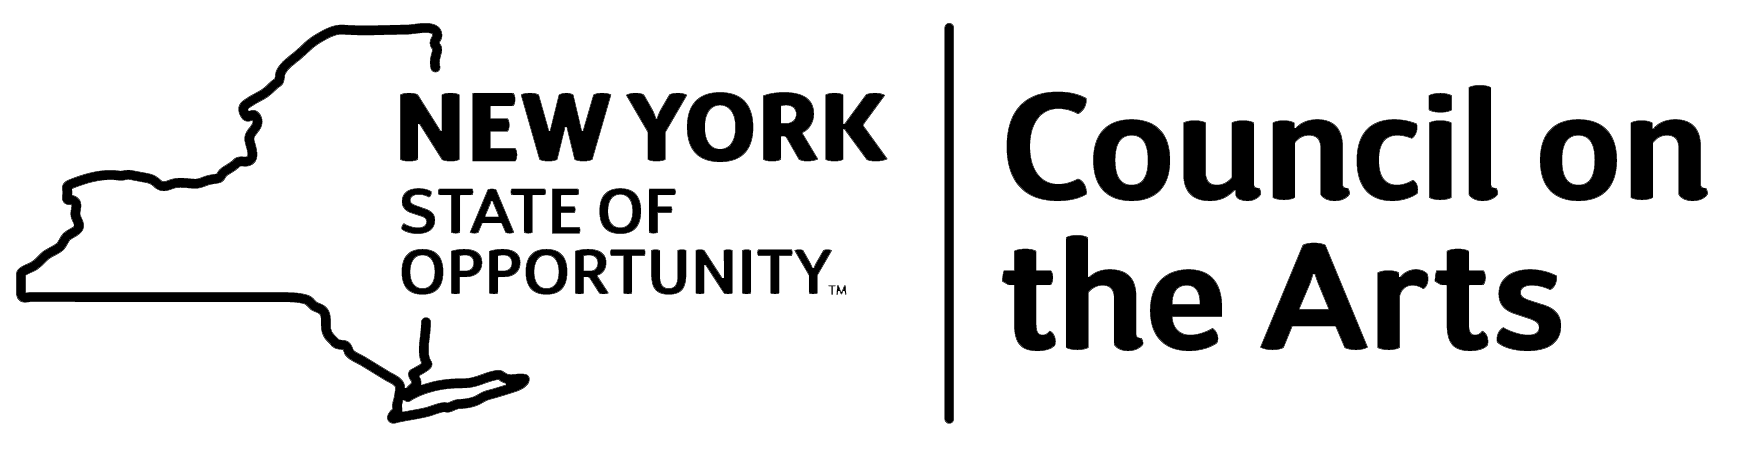 NYSCA logo